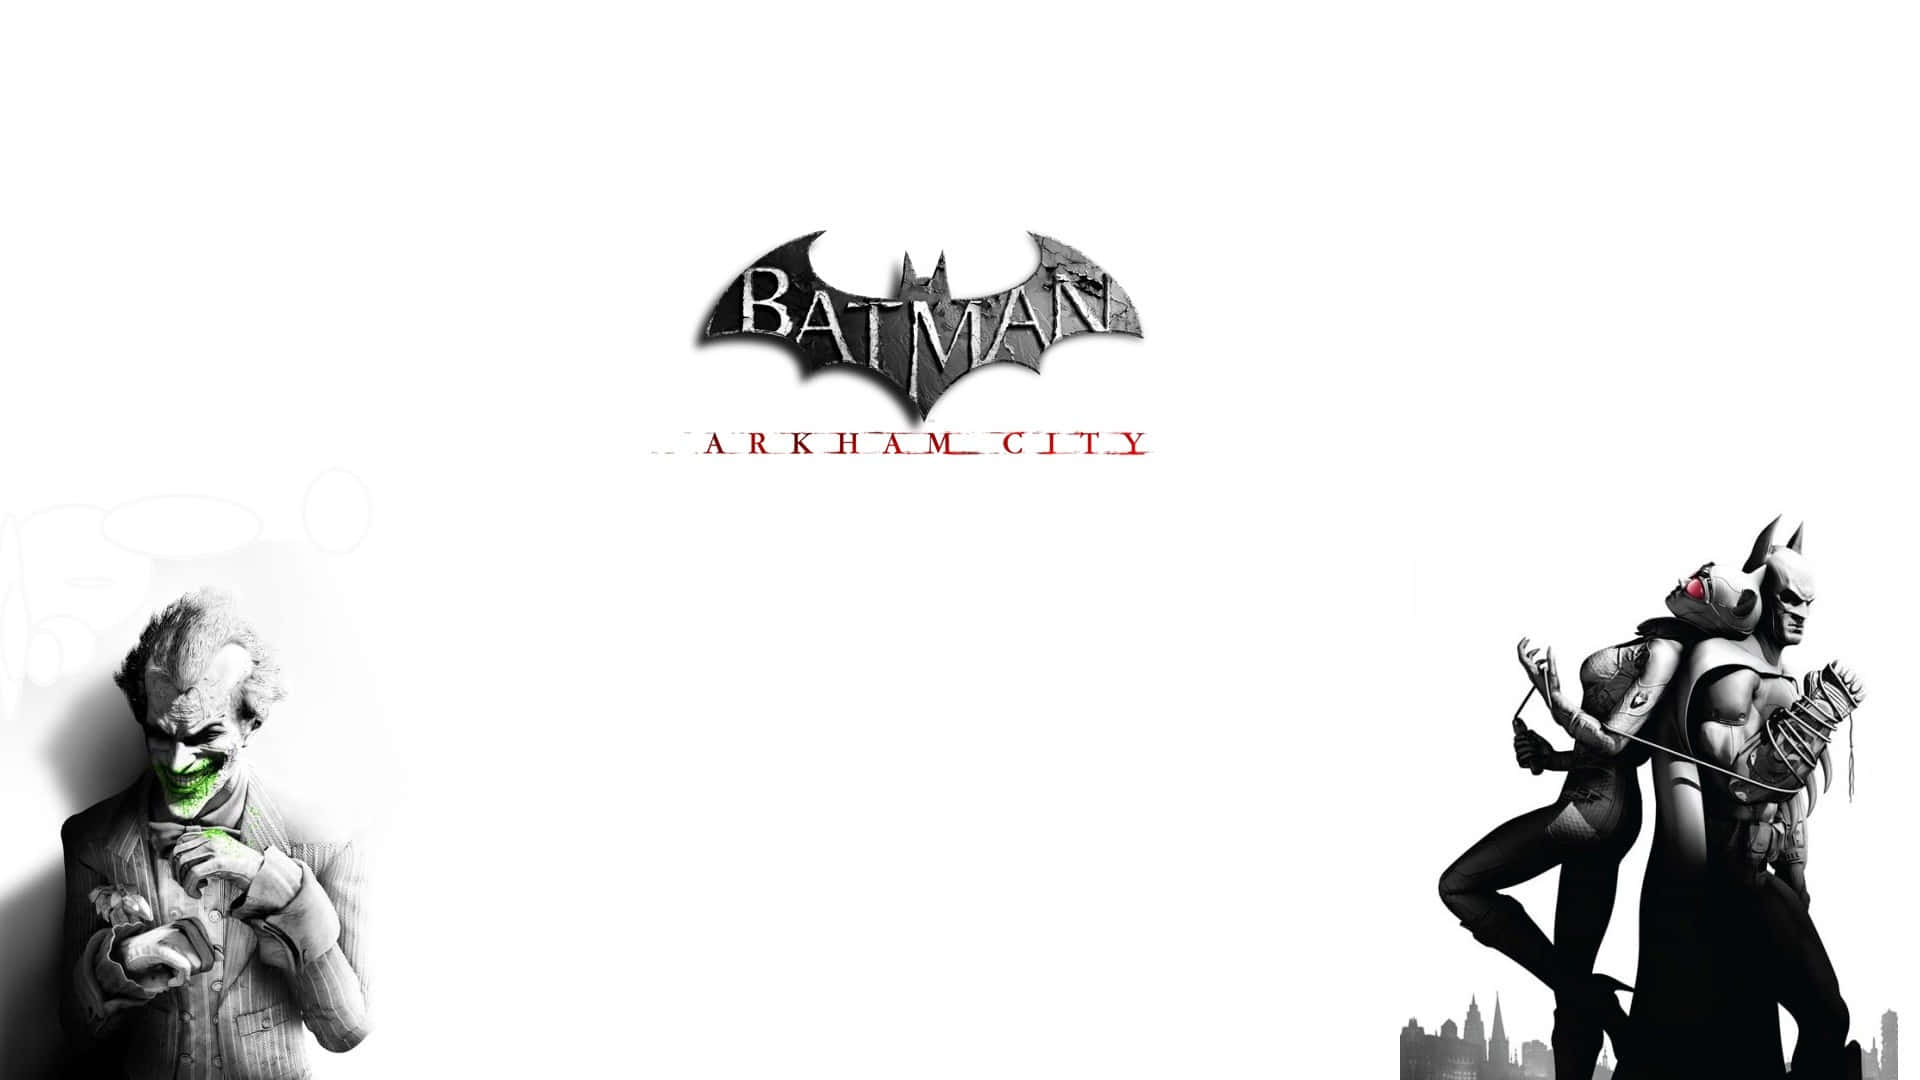 Batmanestá Listo Para Enfrentarse A Las Fuerzas Del Mal En Arkham City.